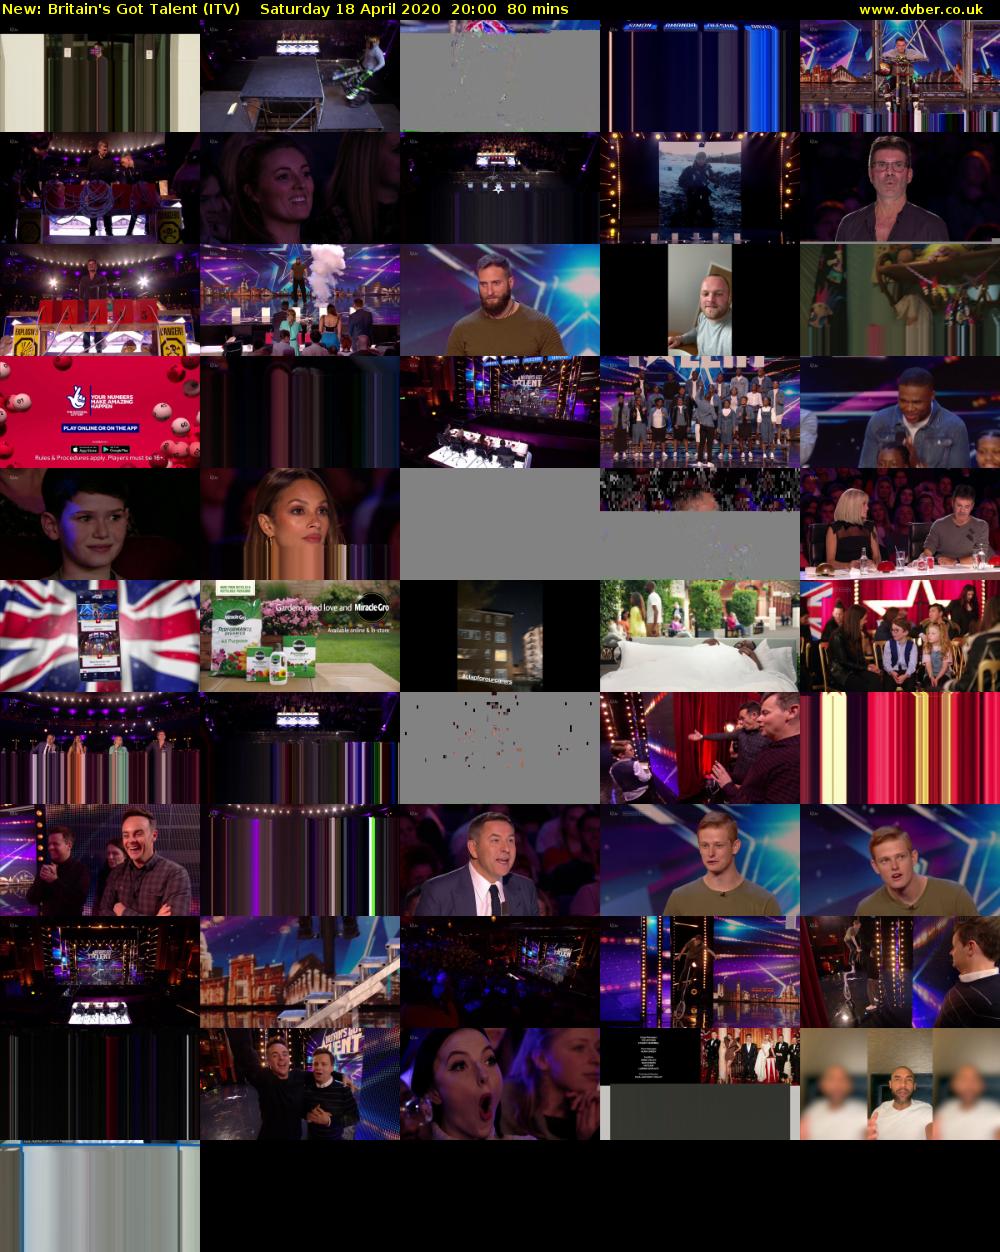 Britain's Got Talent (ITV) Saturday 18 April 2020 20:00 - 21:20